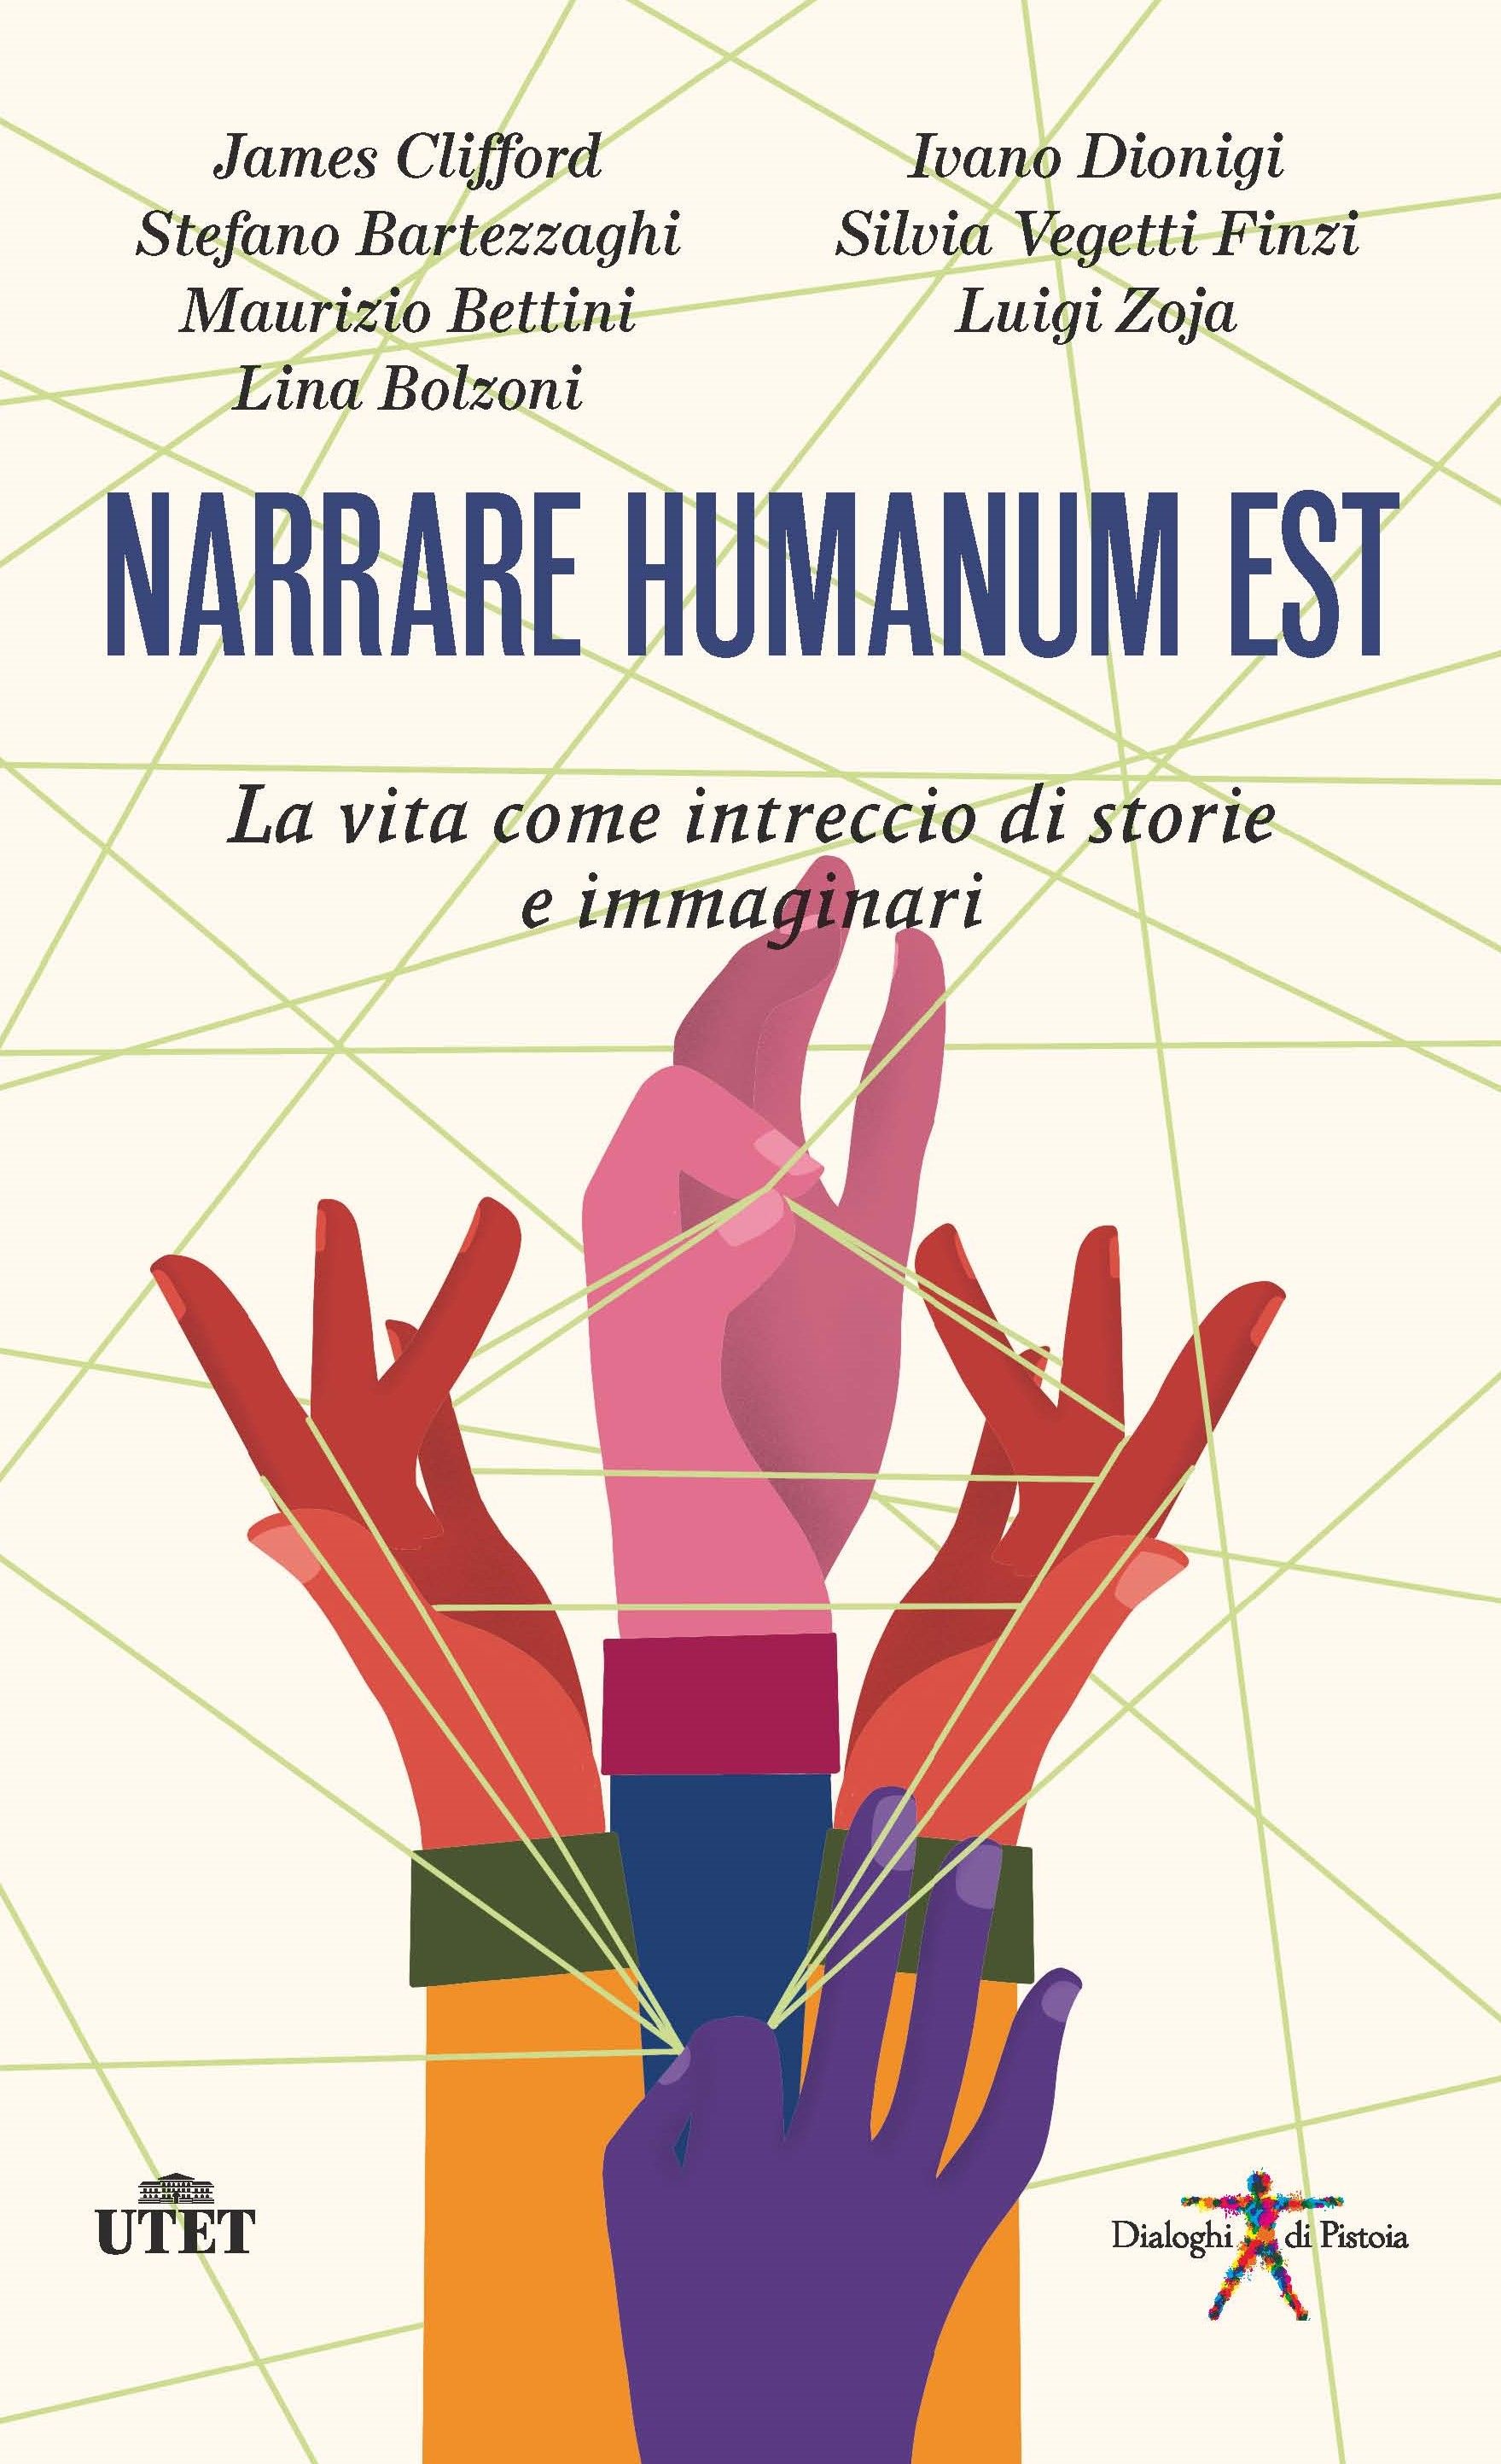 Esce il 14 febbraio il nuovo volume della serie Dialoghi di Pistoia "NARRARE HUMANUM EST. La vita come intreccio di storie e immaginari"